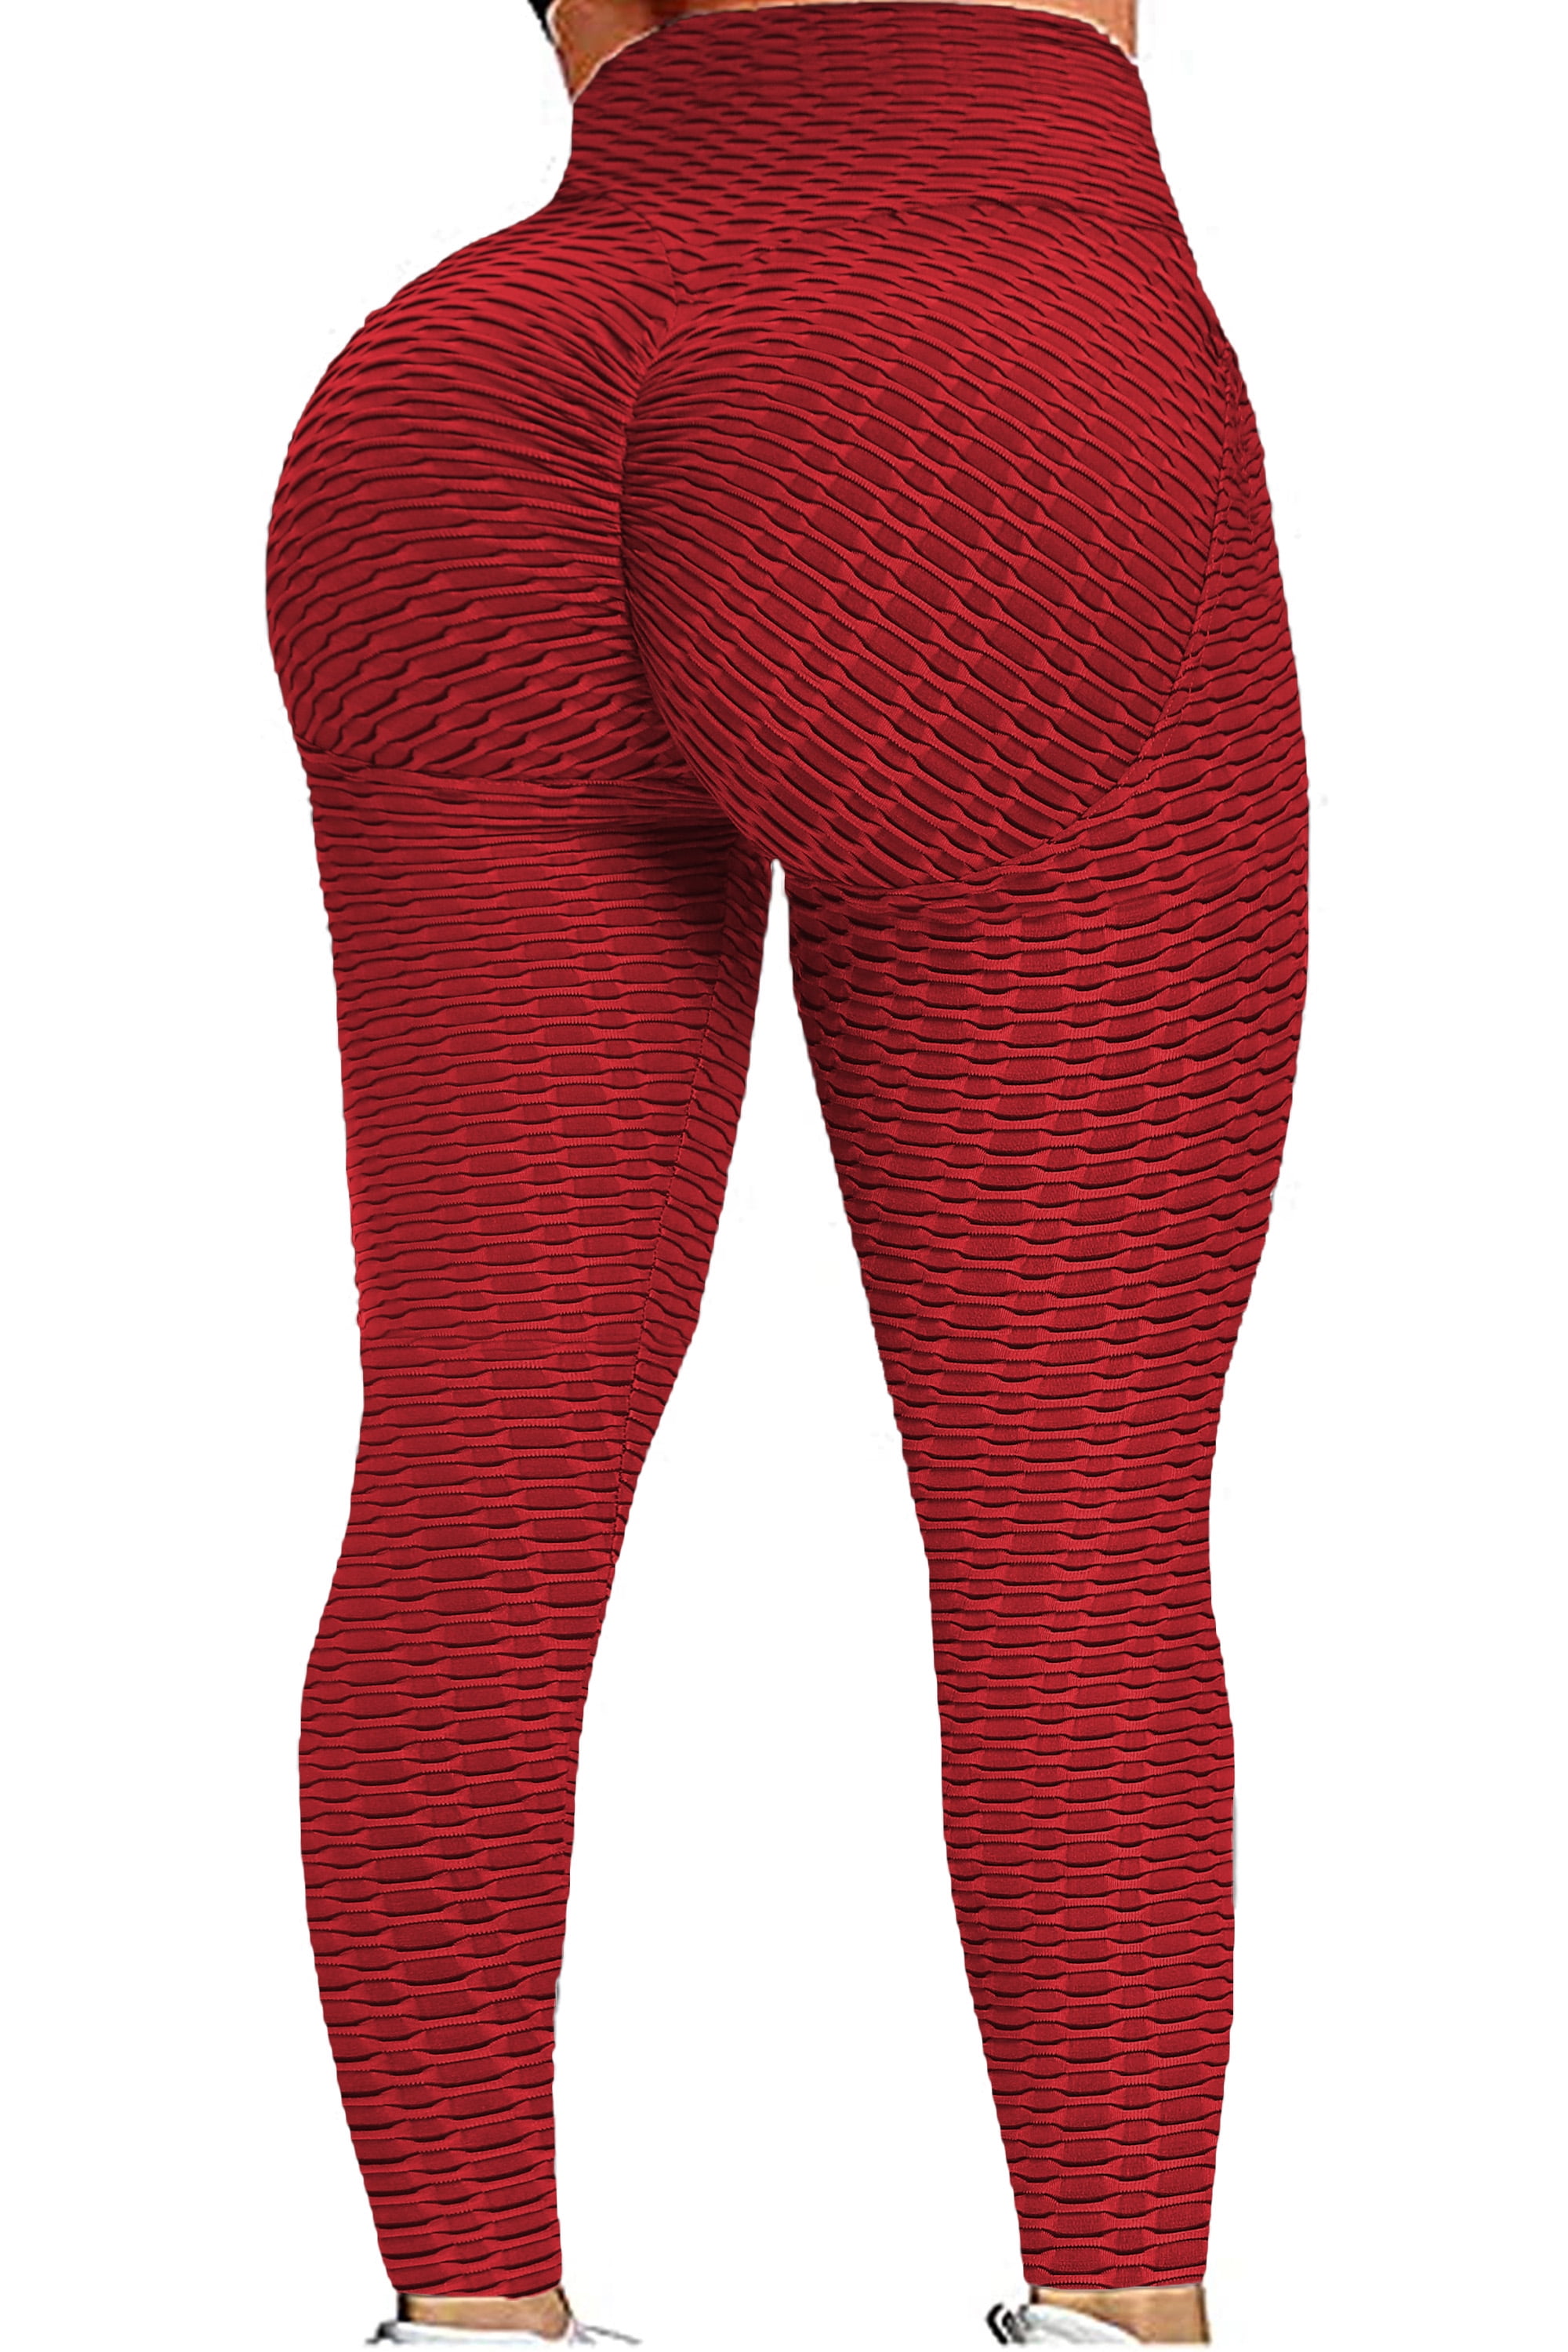 SEASUM Sports Leggings Honeycomb Ruched Women Yoga Pants